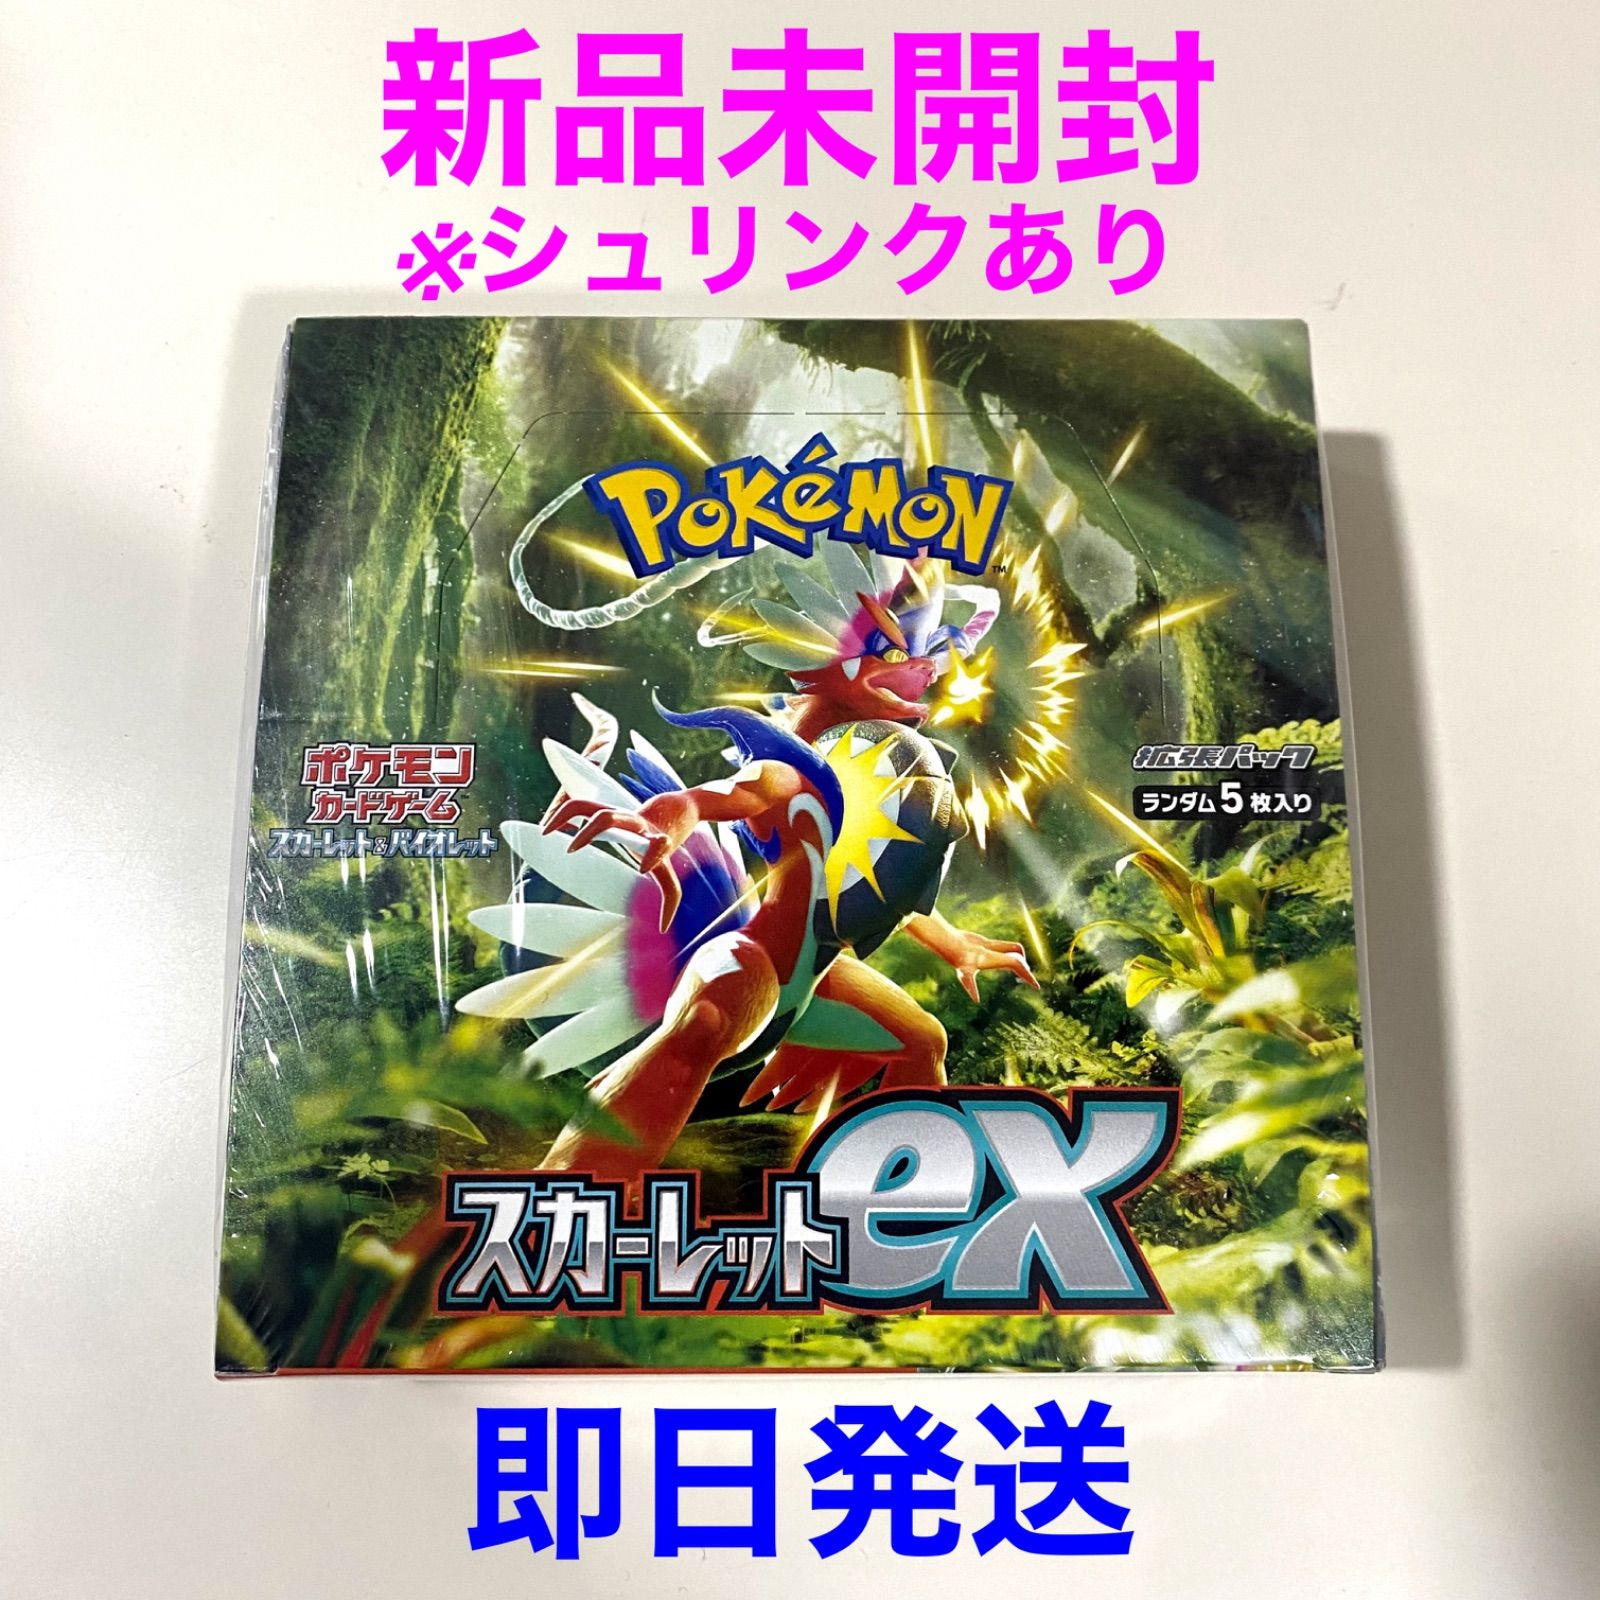 ポケモンカードスカーレットex1BOX - ポケモンカードゲーム